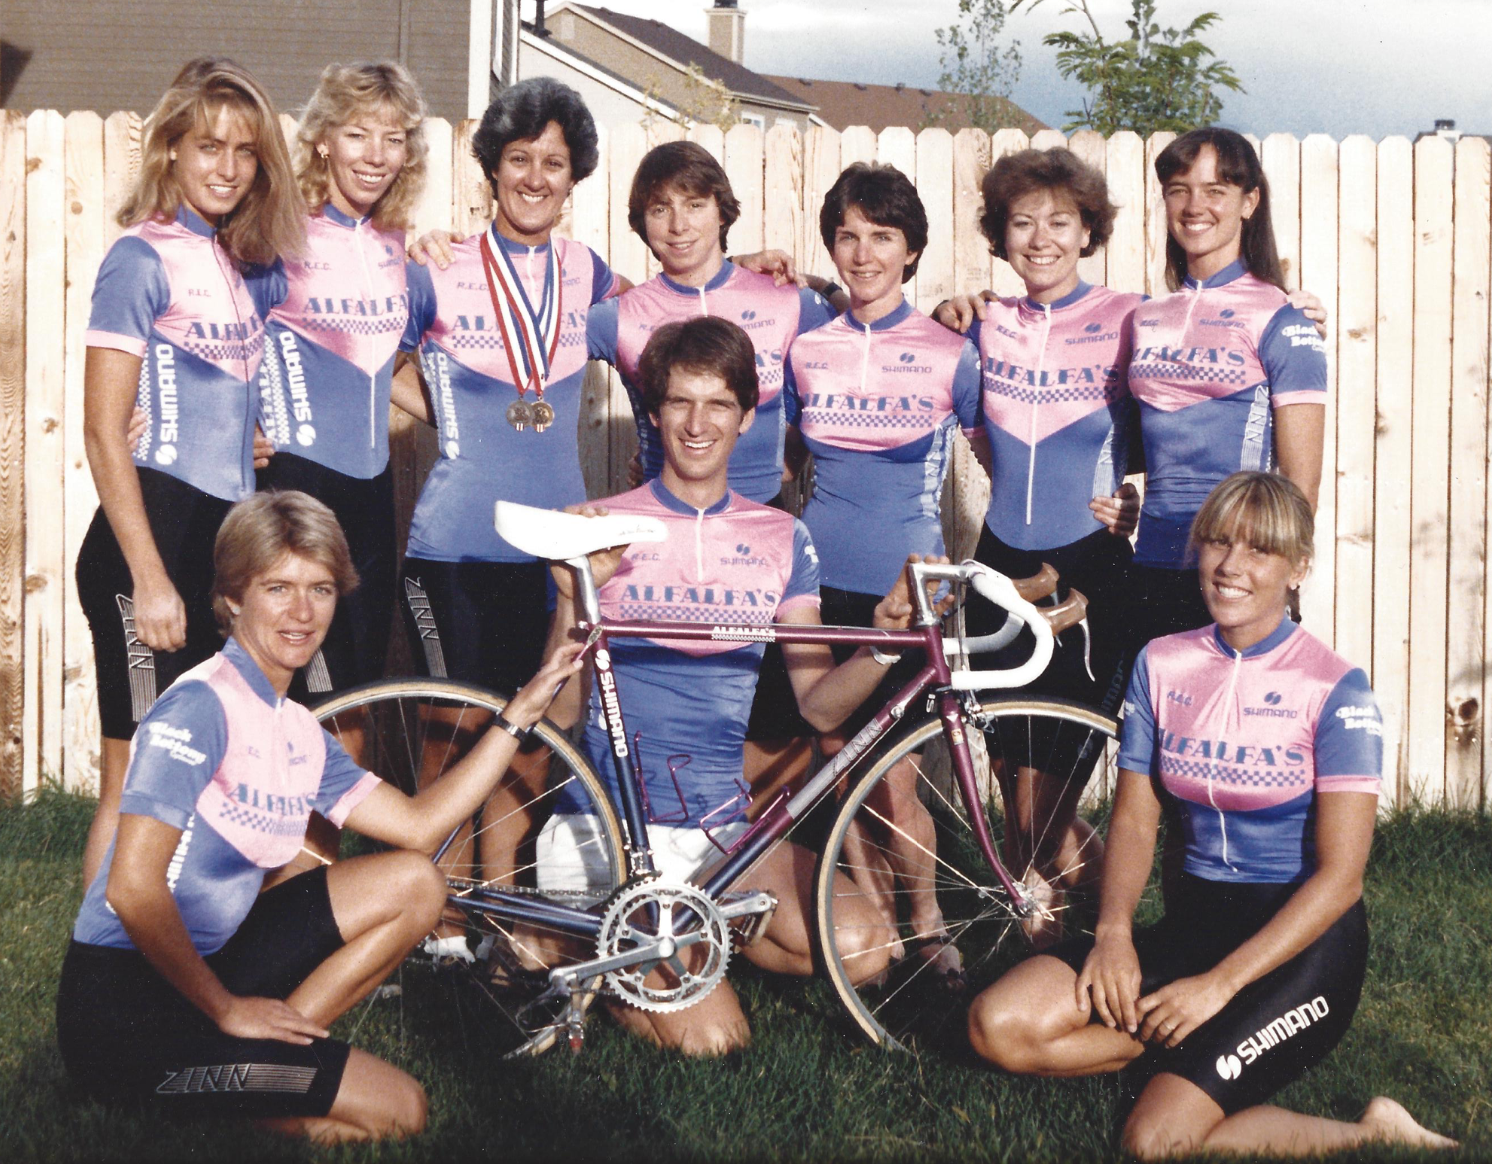 Lennard Zinn and the women’s racing team